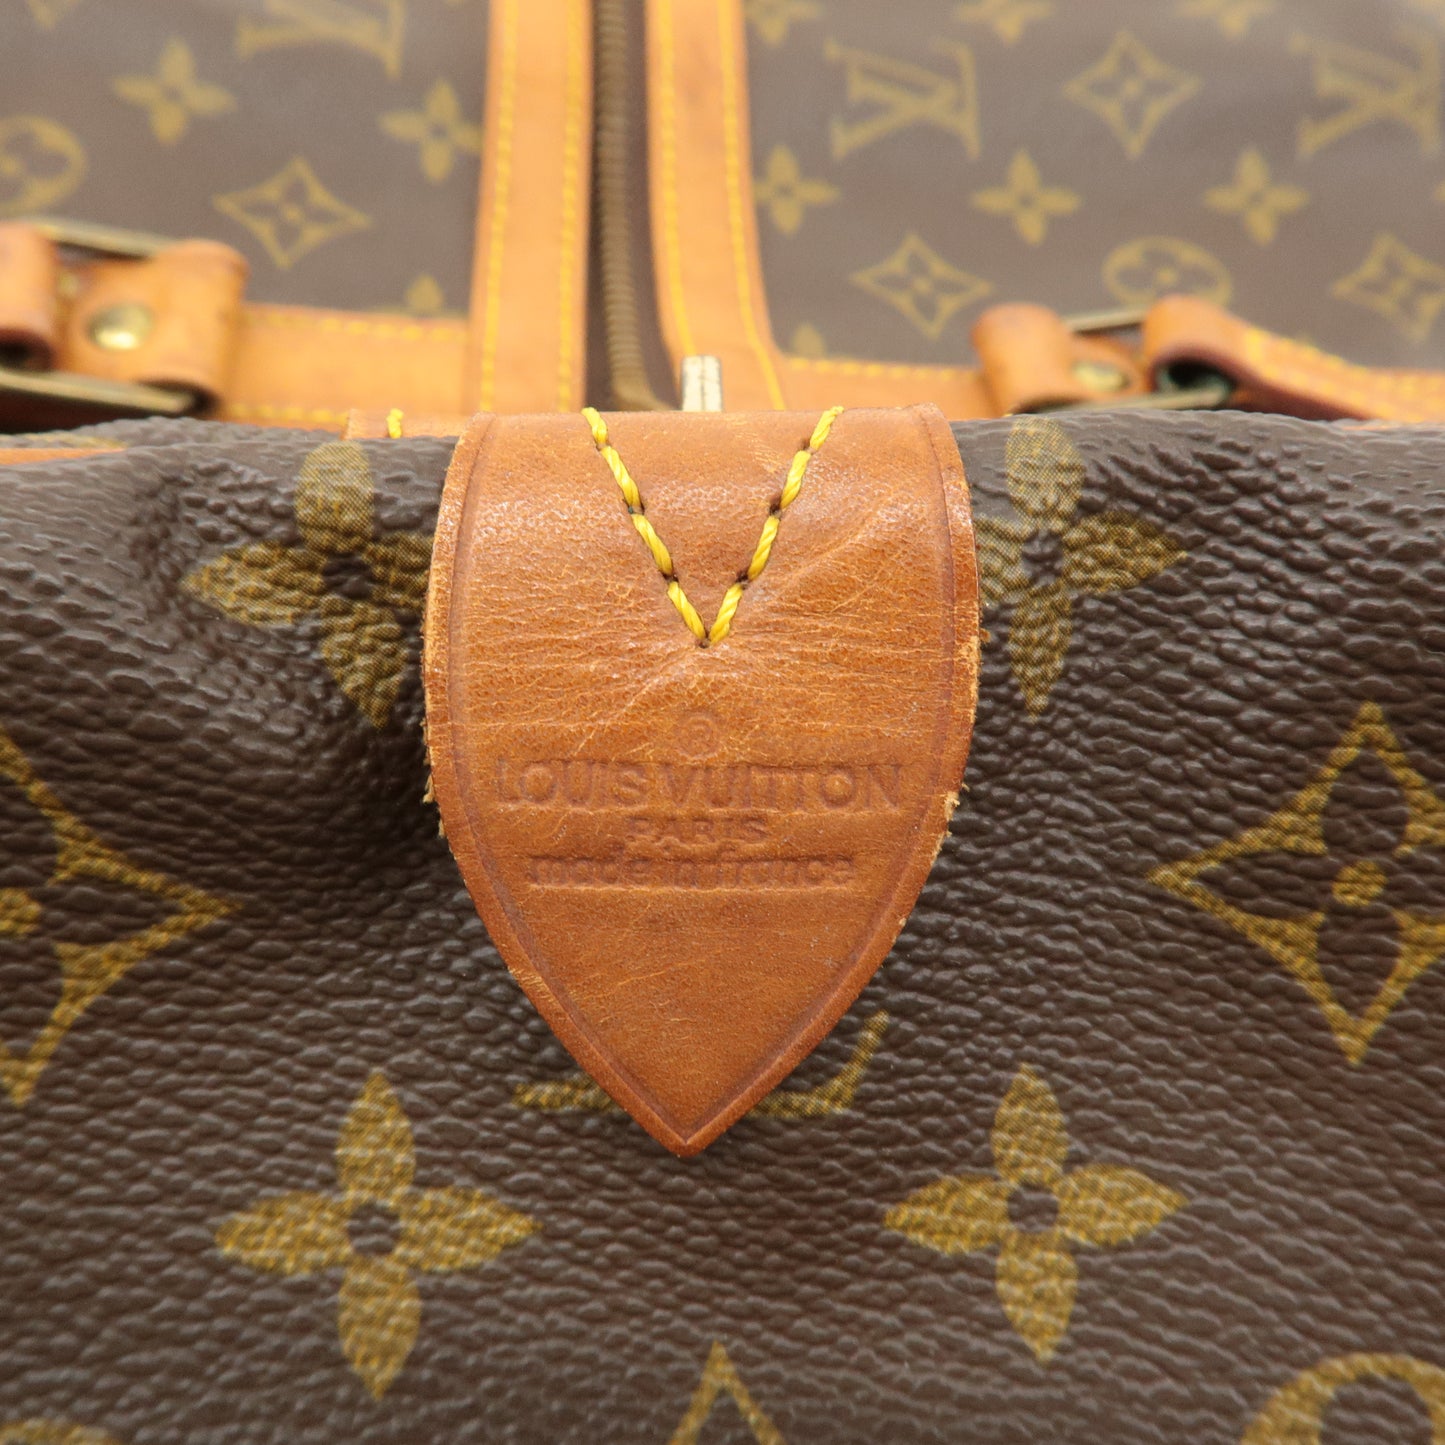 Louis Vuitton Monogram Sac Souple 55 Boston Bag Brown M41622